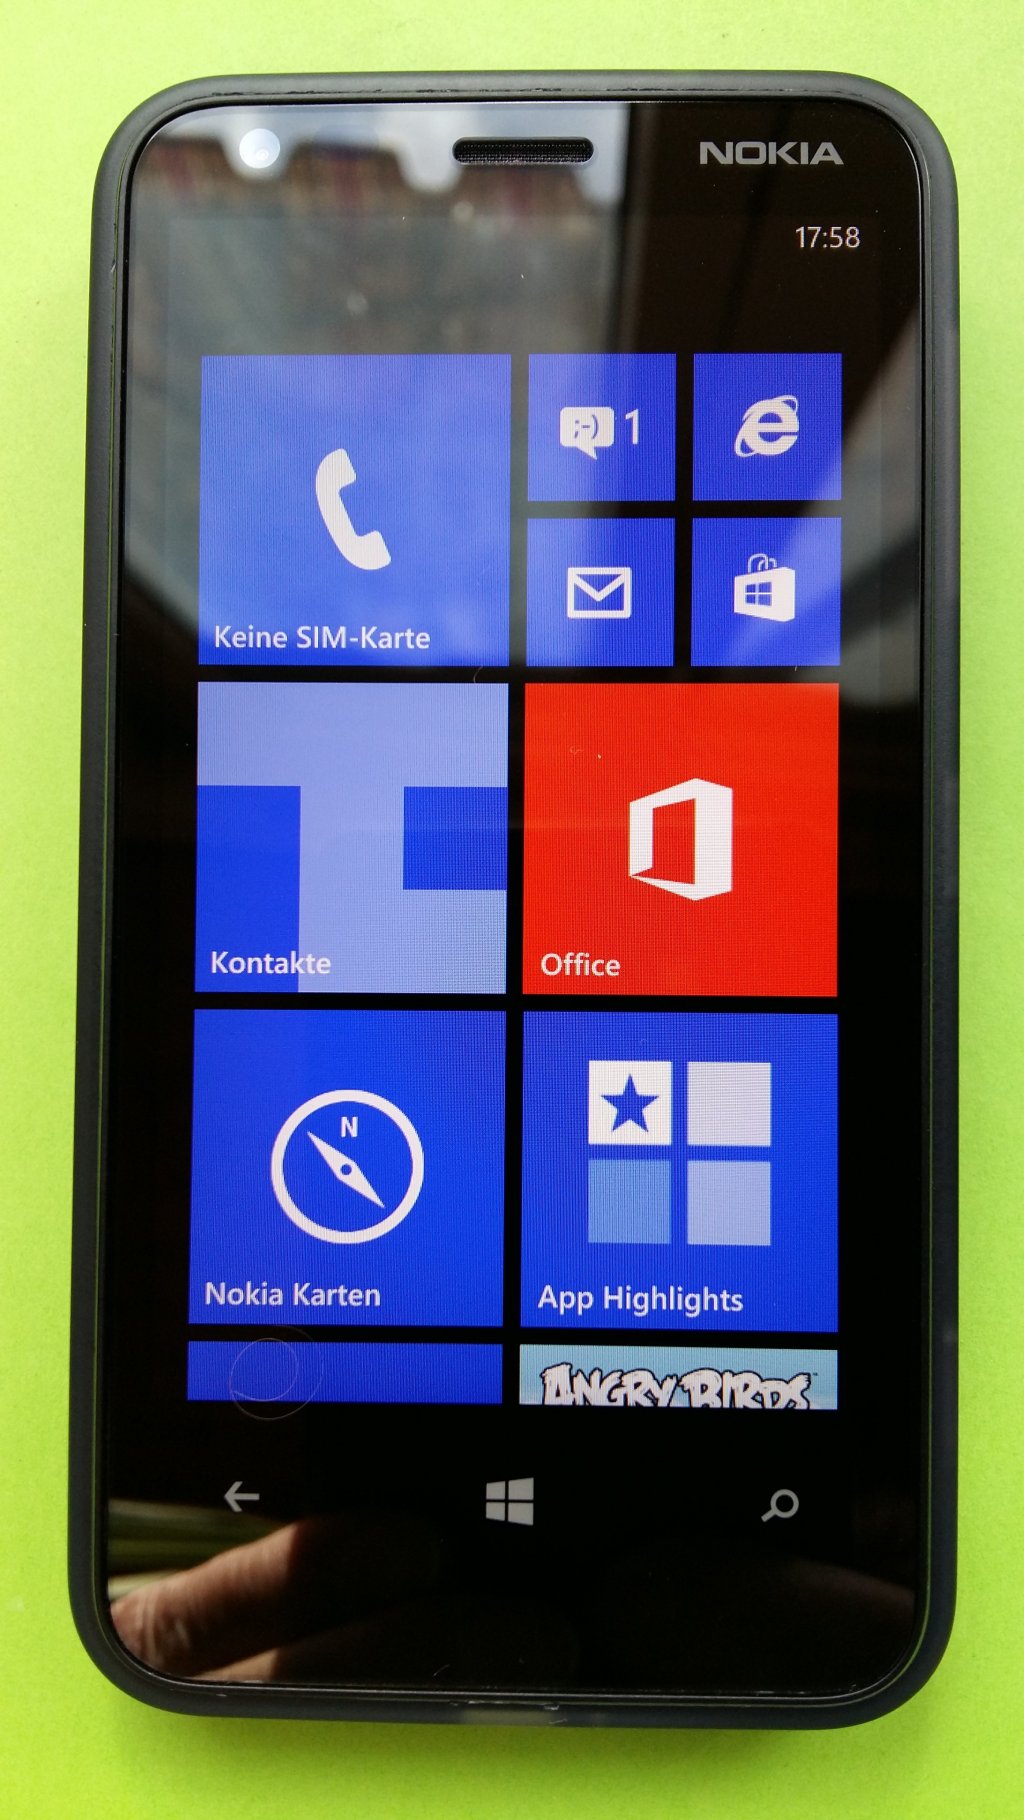 image-7889577-Nokia_620_Lumia_(1)1.w640.jpg